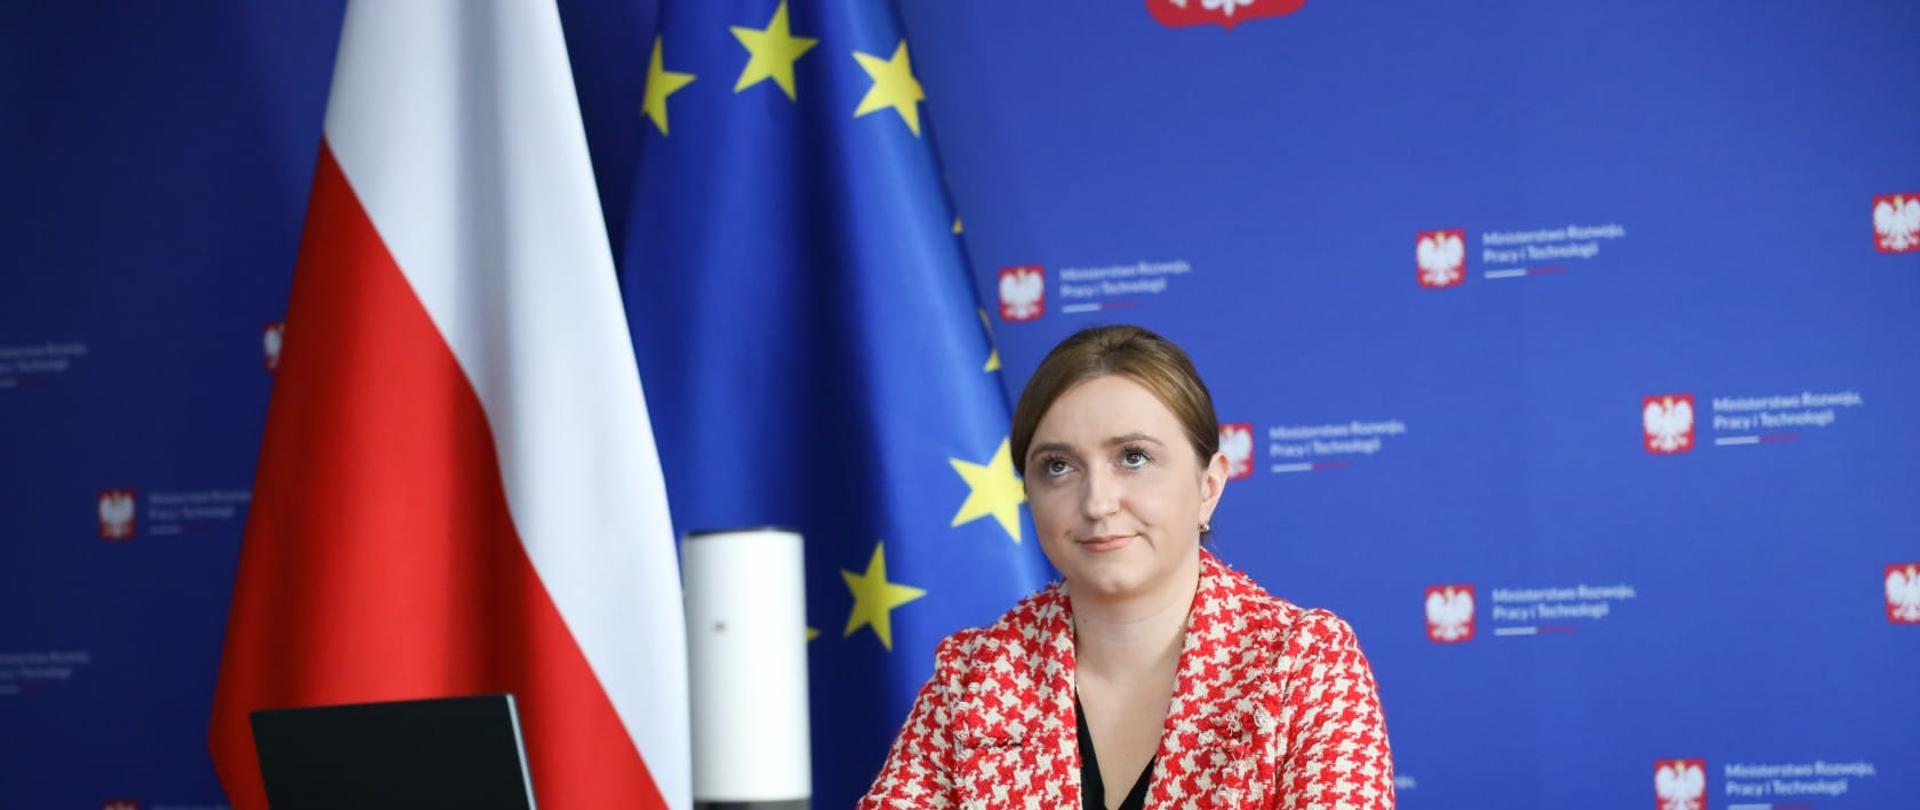 Wiceminister Olga Semeniuk podczas konferencji „Kadry Przyszłości - Kadry dla Przemysłu”. Wiceminister siedzi przy stole, po prawej stronie ma flagę Polski i Unii Europejskiej, z tyłu banek ministerstwa rozwoju. 